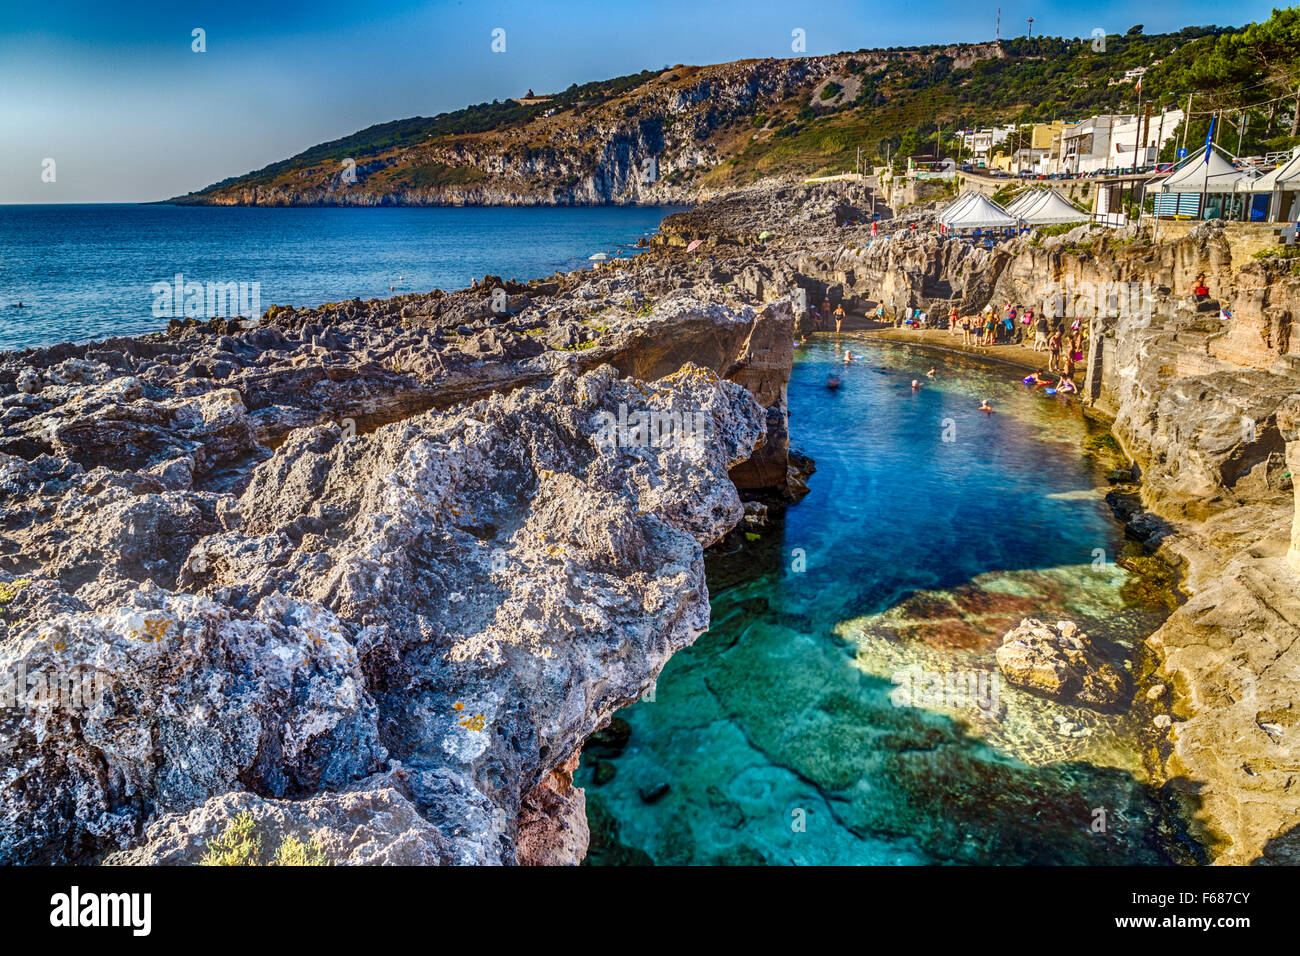 Incredibile piscina naturale circondato solo dal mare Adriatico o dalle grotte in Italia, Marina Serra Tricase, Lecce, Puglia Foto Stock